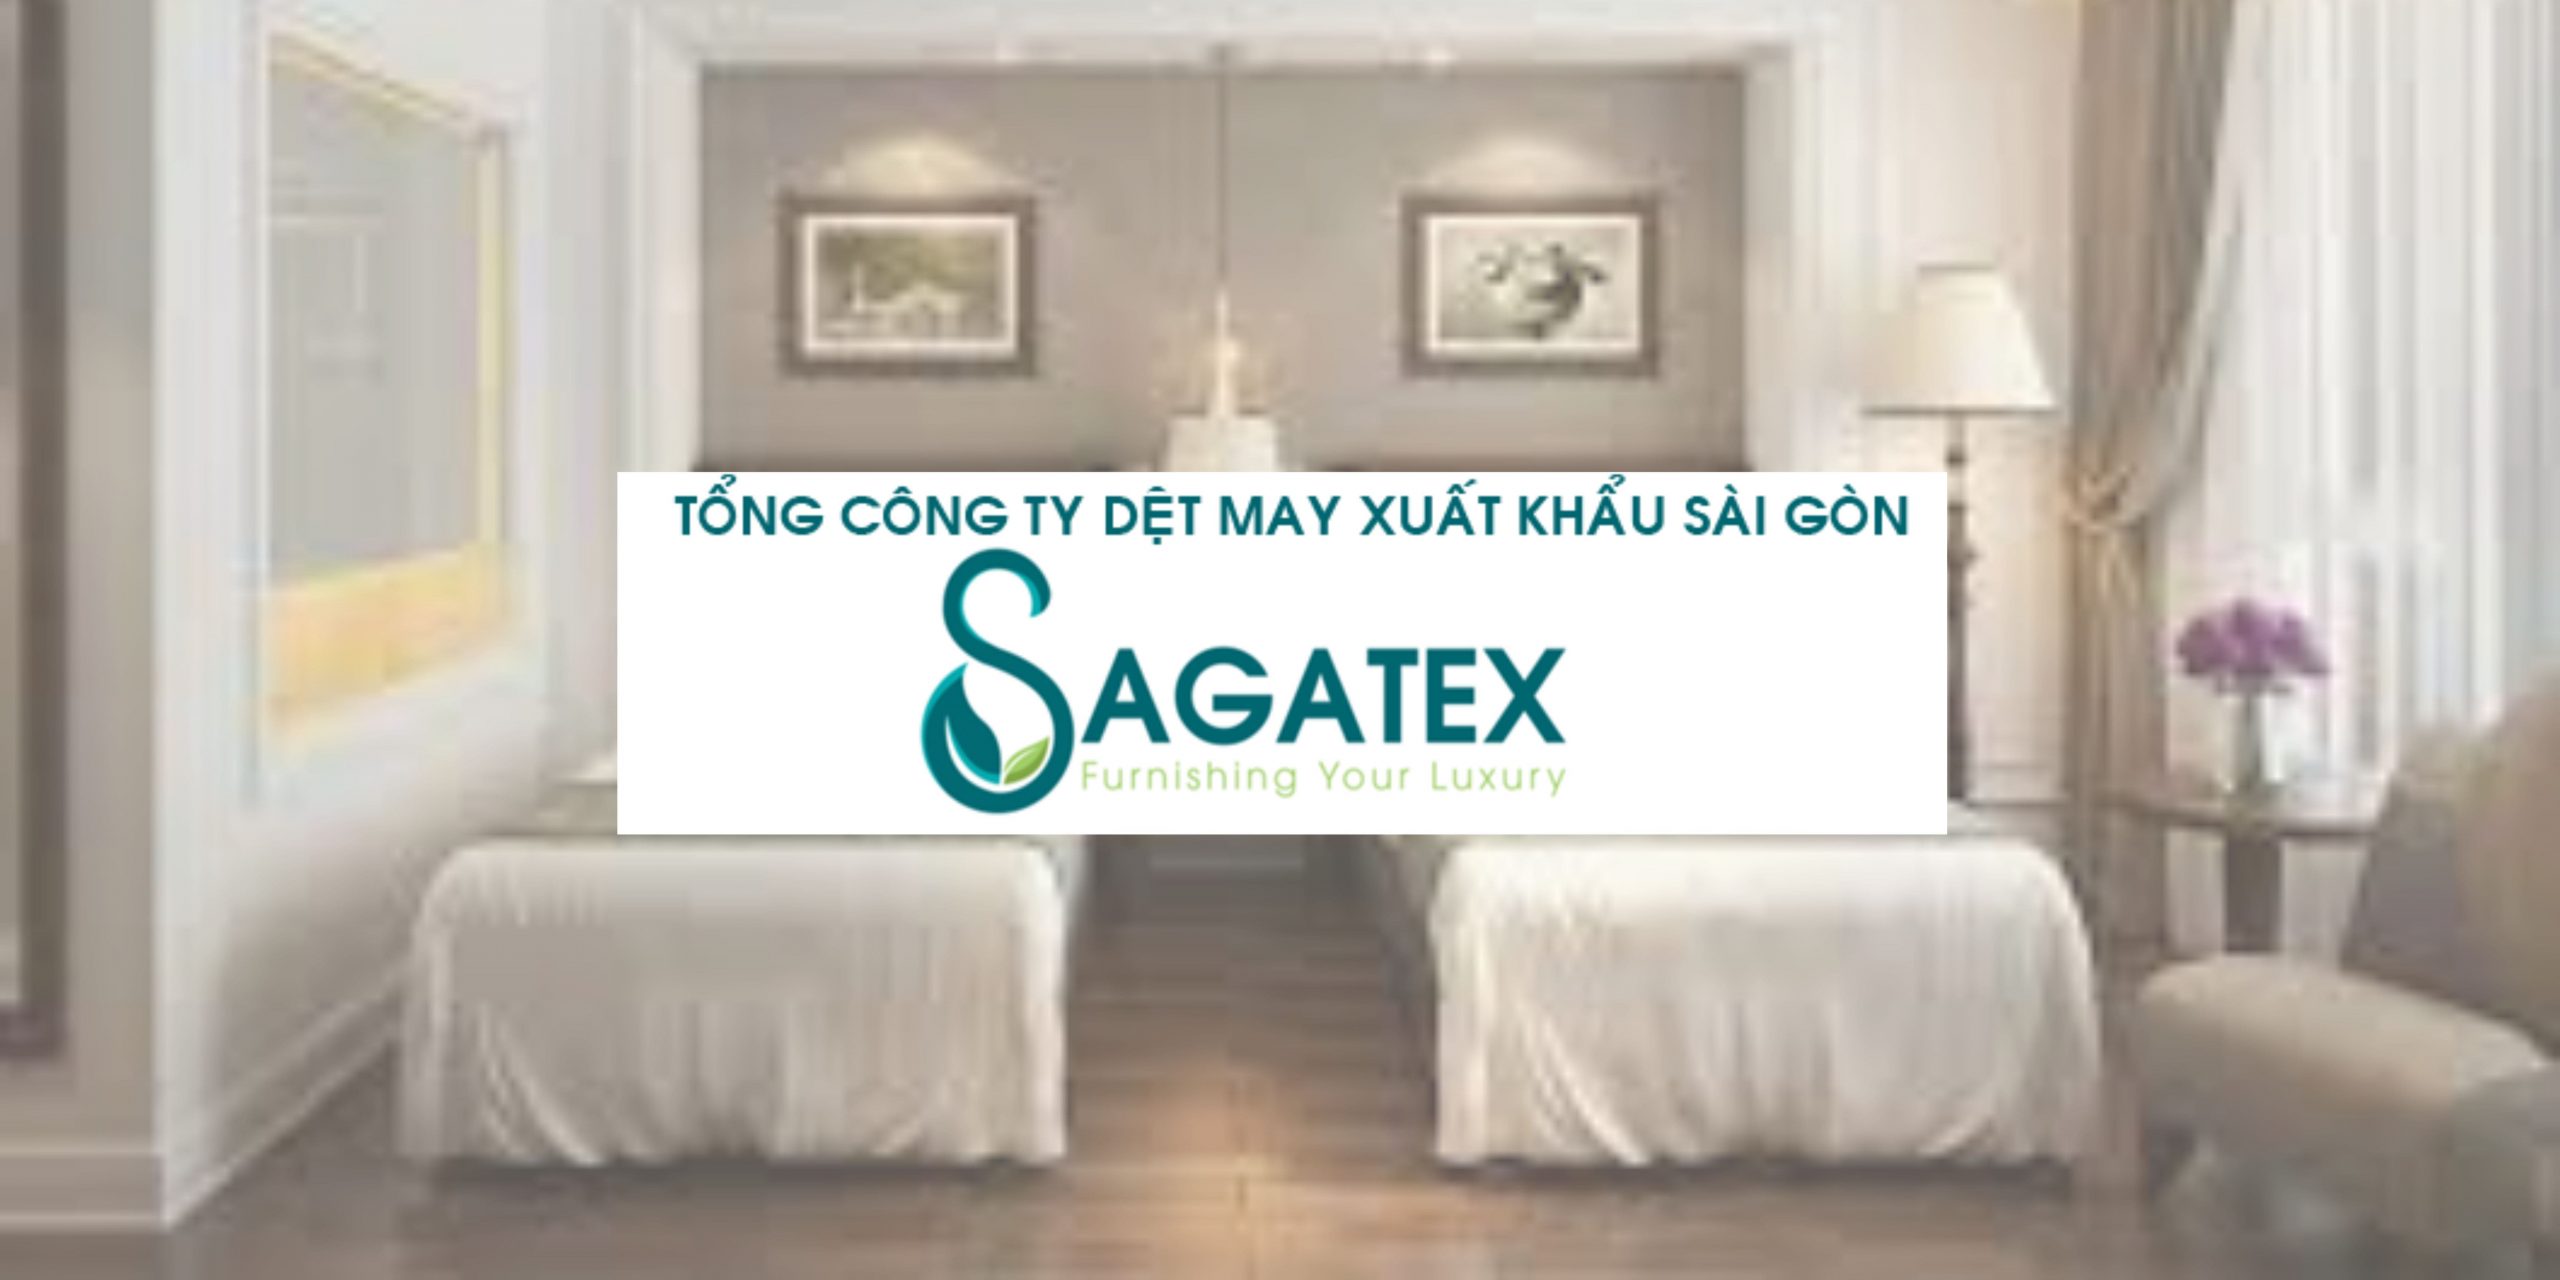 Địa chỉ cung cấp chăn ga khách sạn tin cậy Sagatex